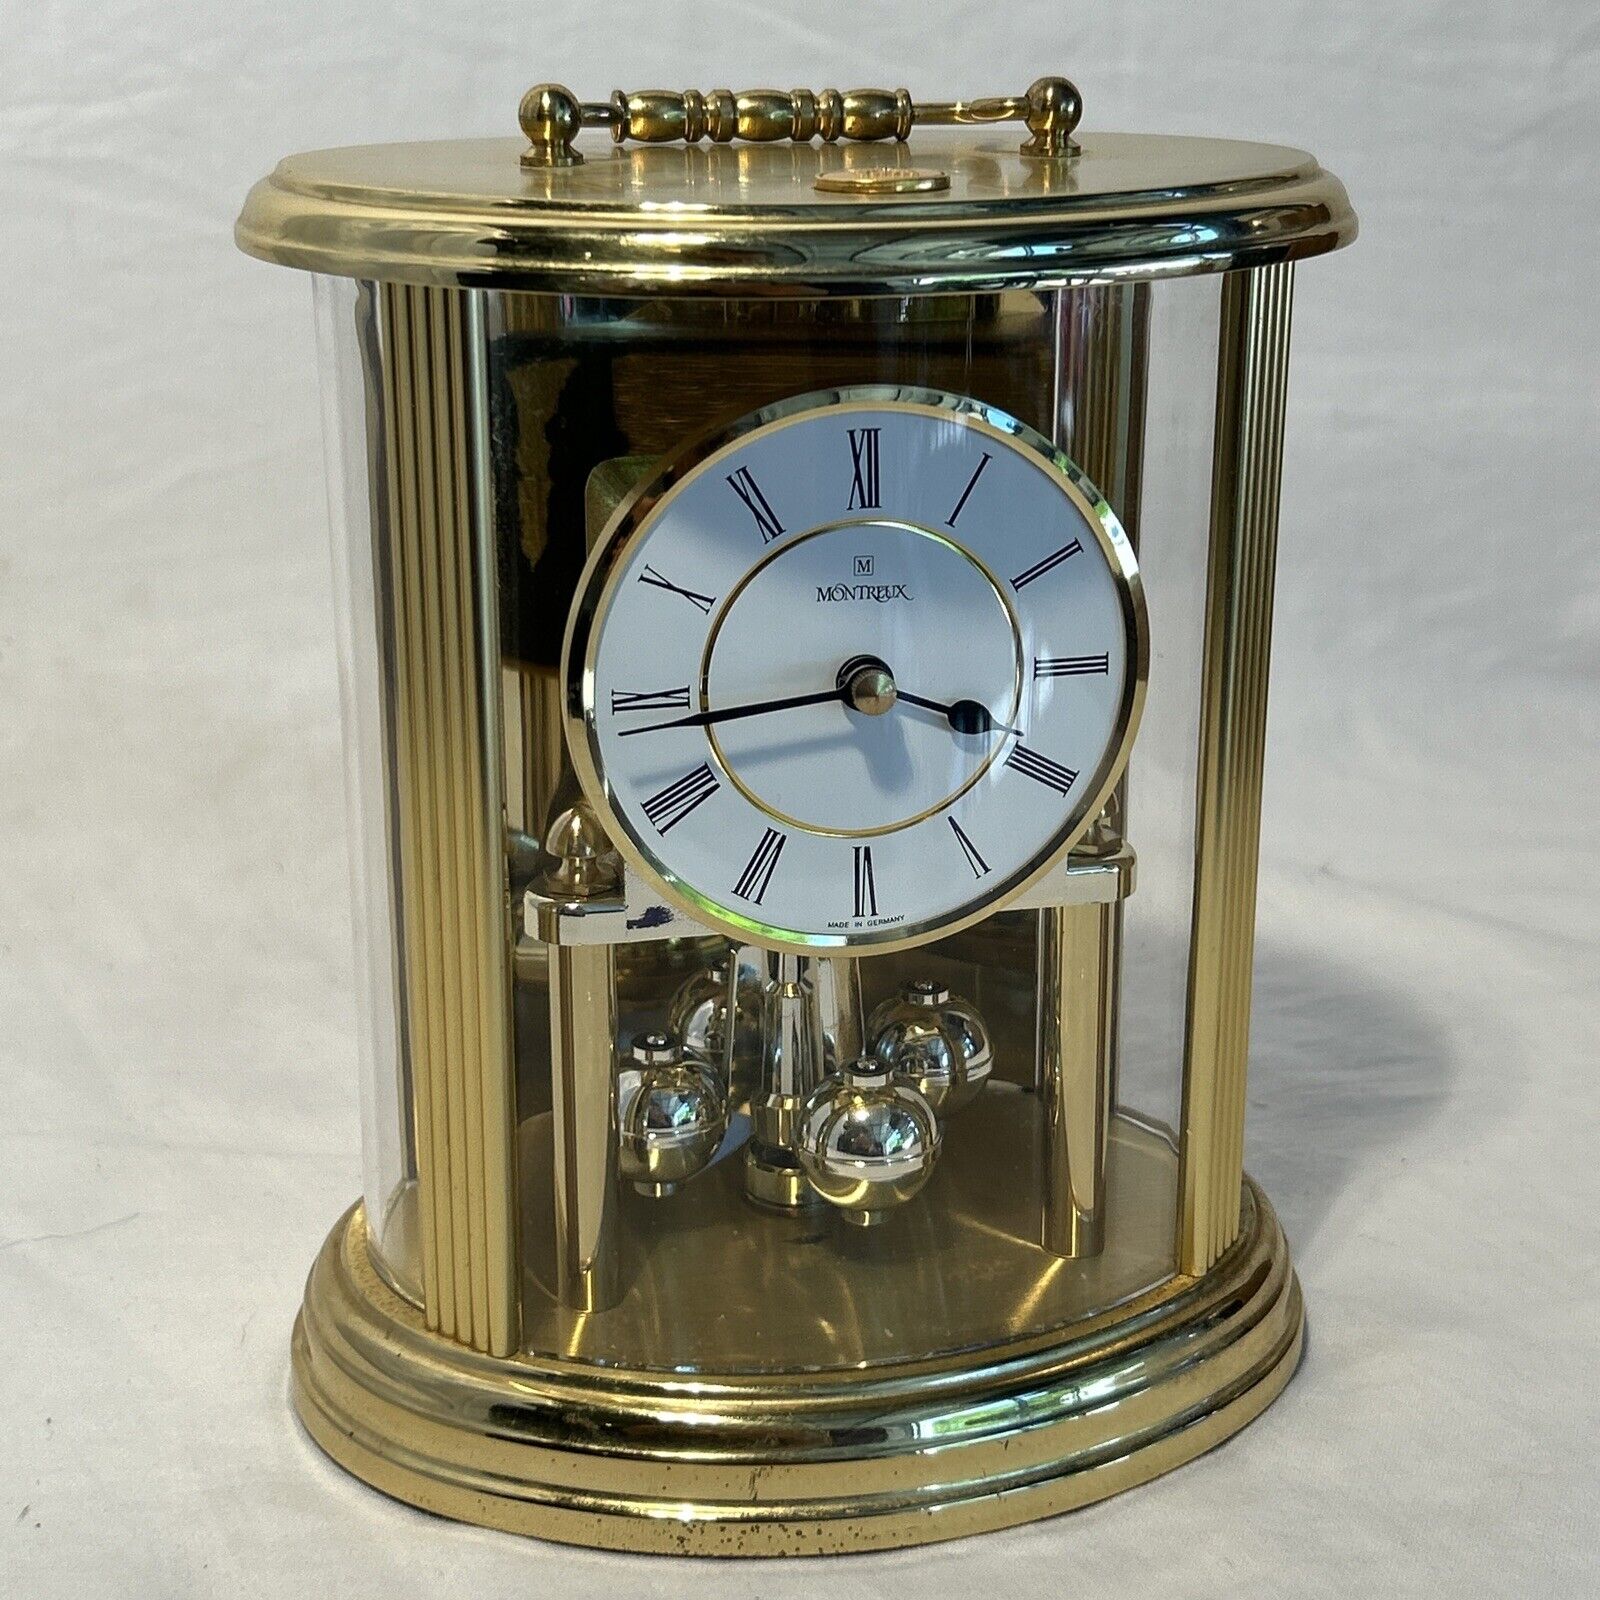 Vintage Quartz Montreux Clock Made In Germany - Works